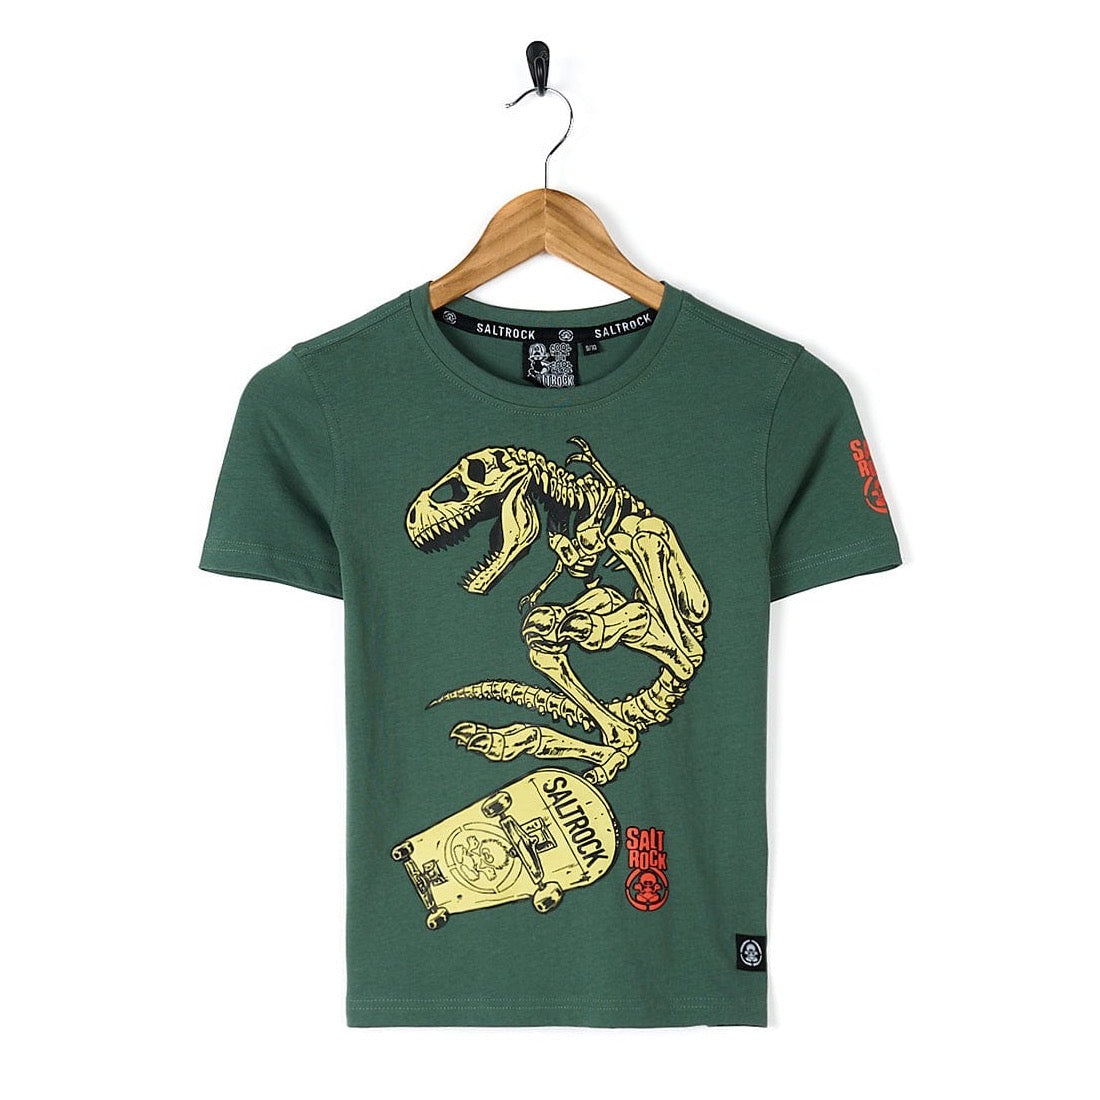 Saltrock Dinosk8 Kids T-Shirt Clothing 7/8YRS / Green,9/10YRS / Green,11/12YRS / Green